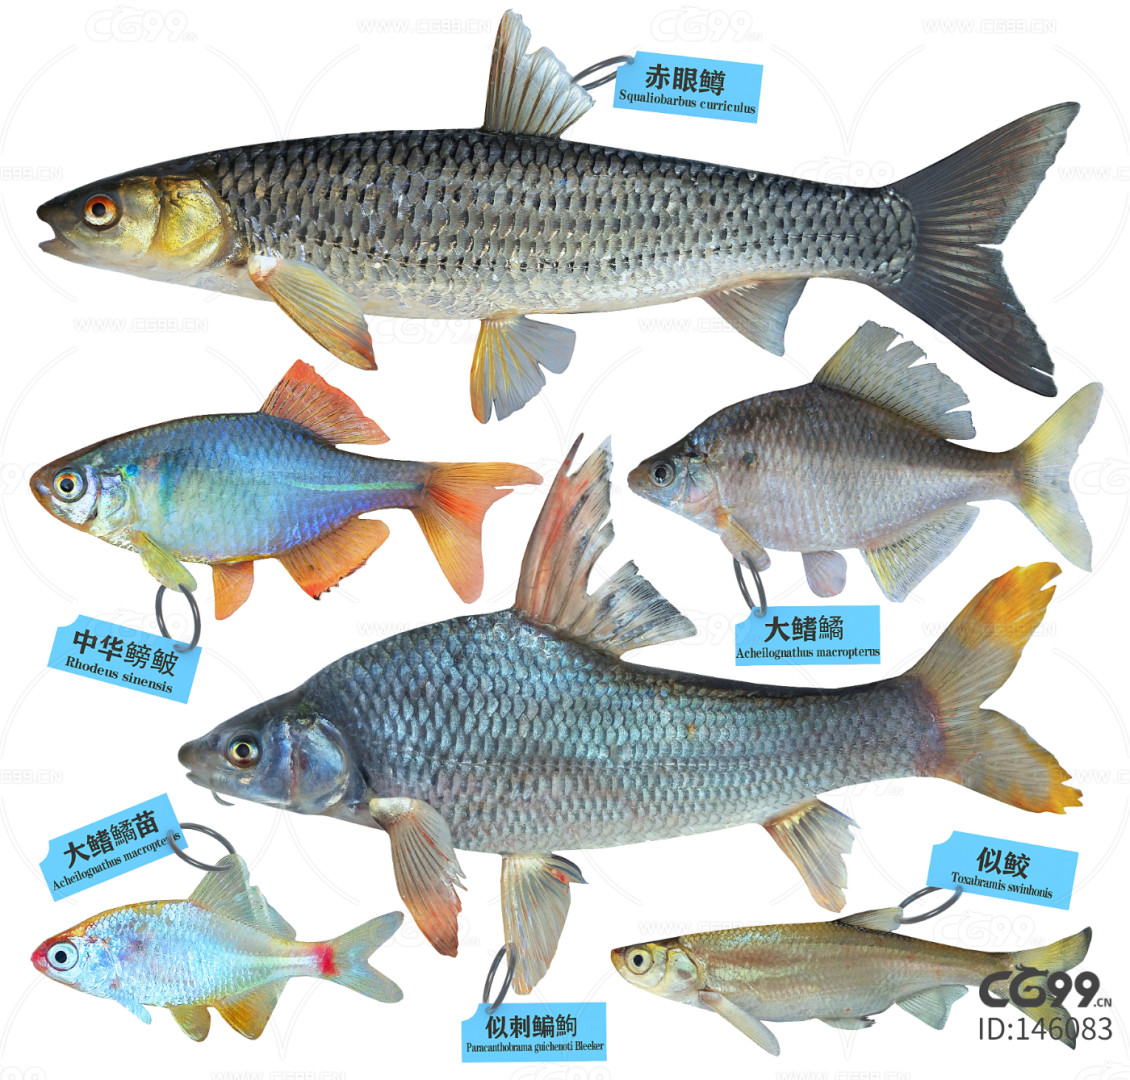 169种淡水鱼名称和图片,100种常见鱼类名称 - 伤感说说吧